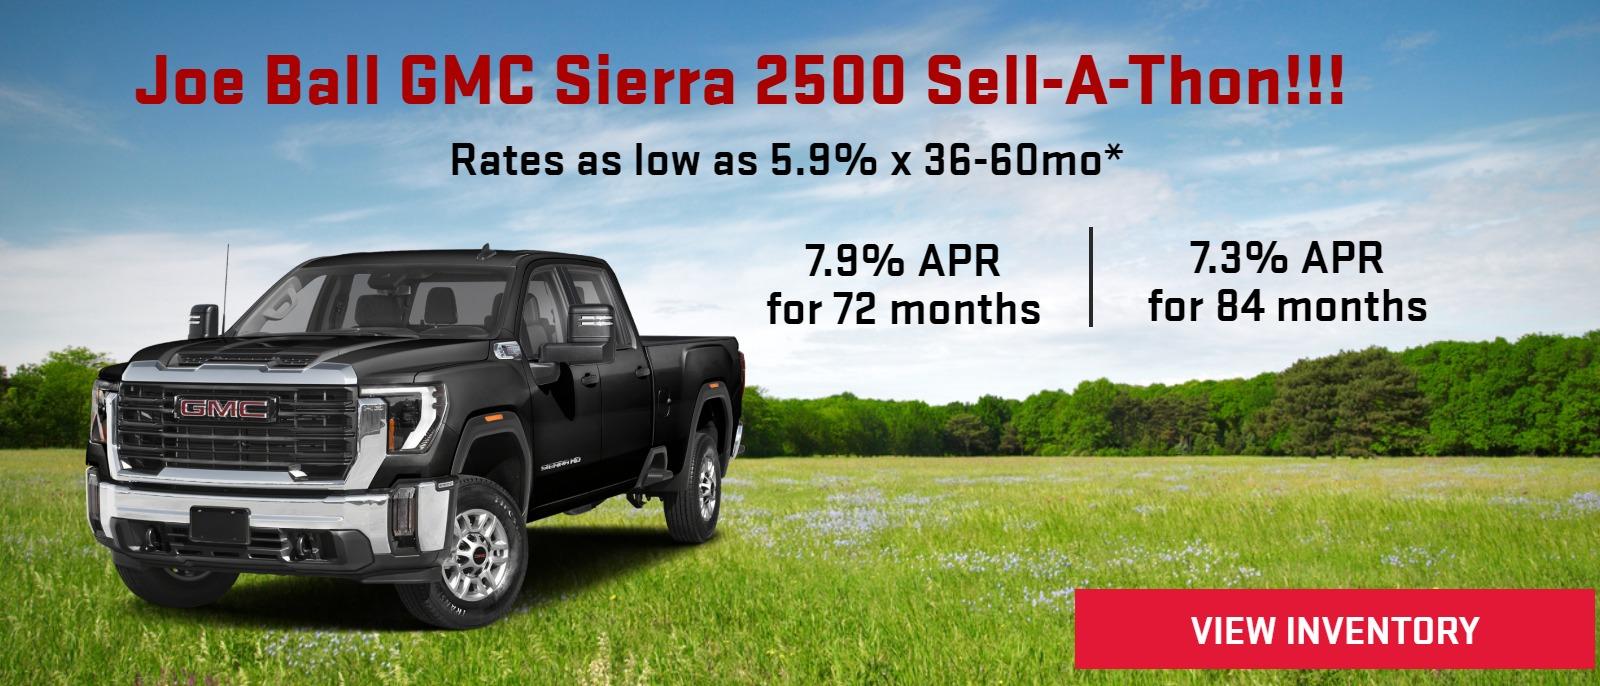 Joe Ball GMC Sierra 2500 Sell-A-Thon!!!